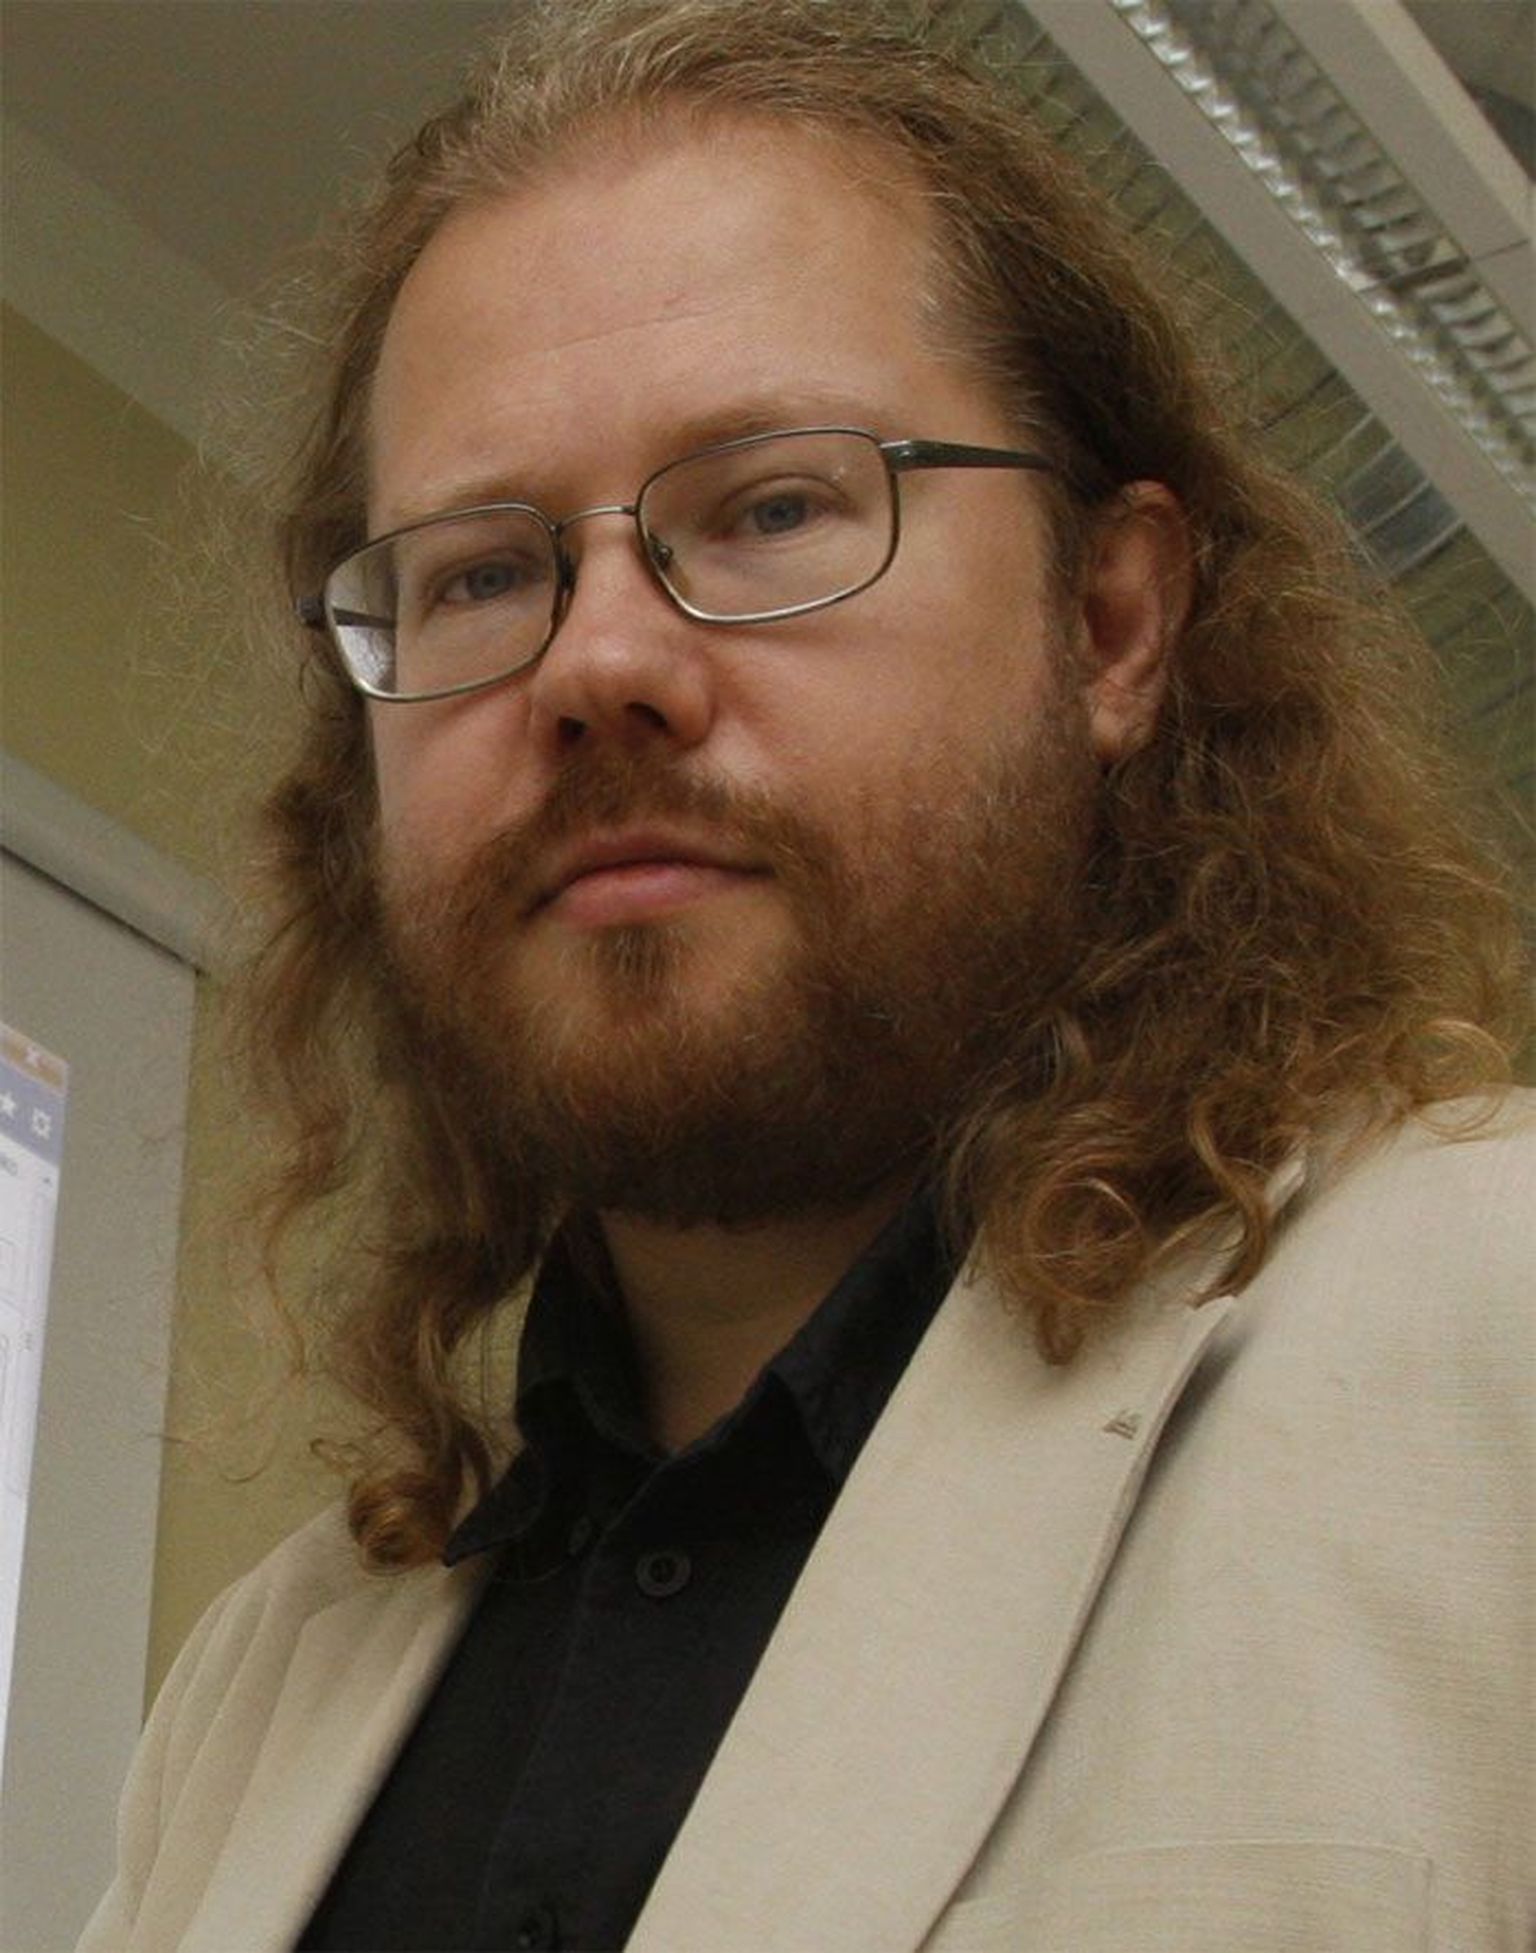 Raul Veede 
MTÜ Wikimedia Eesti juhatuse liige